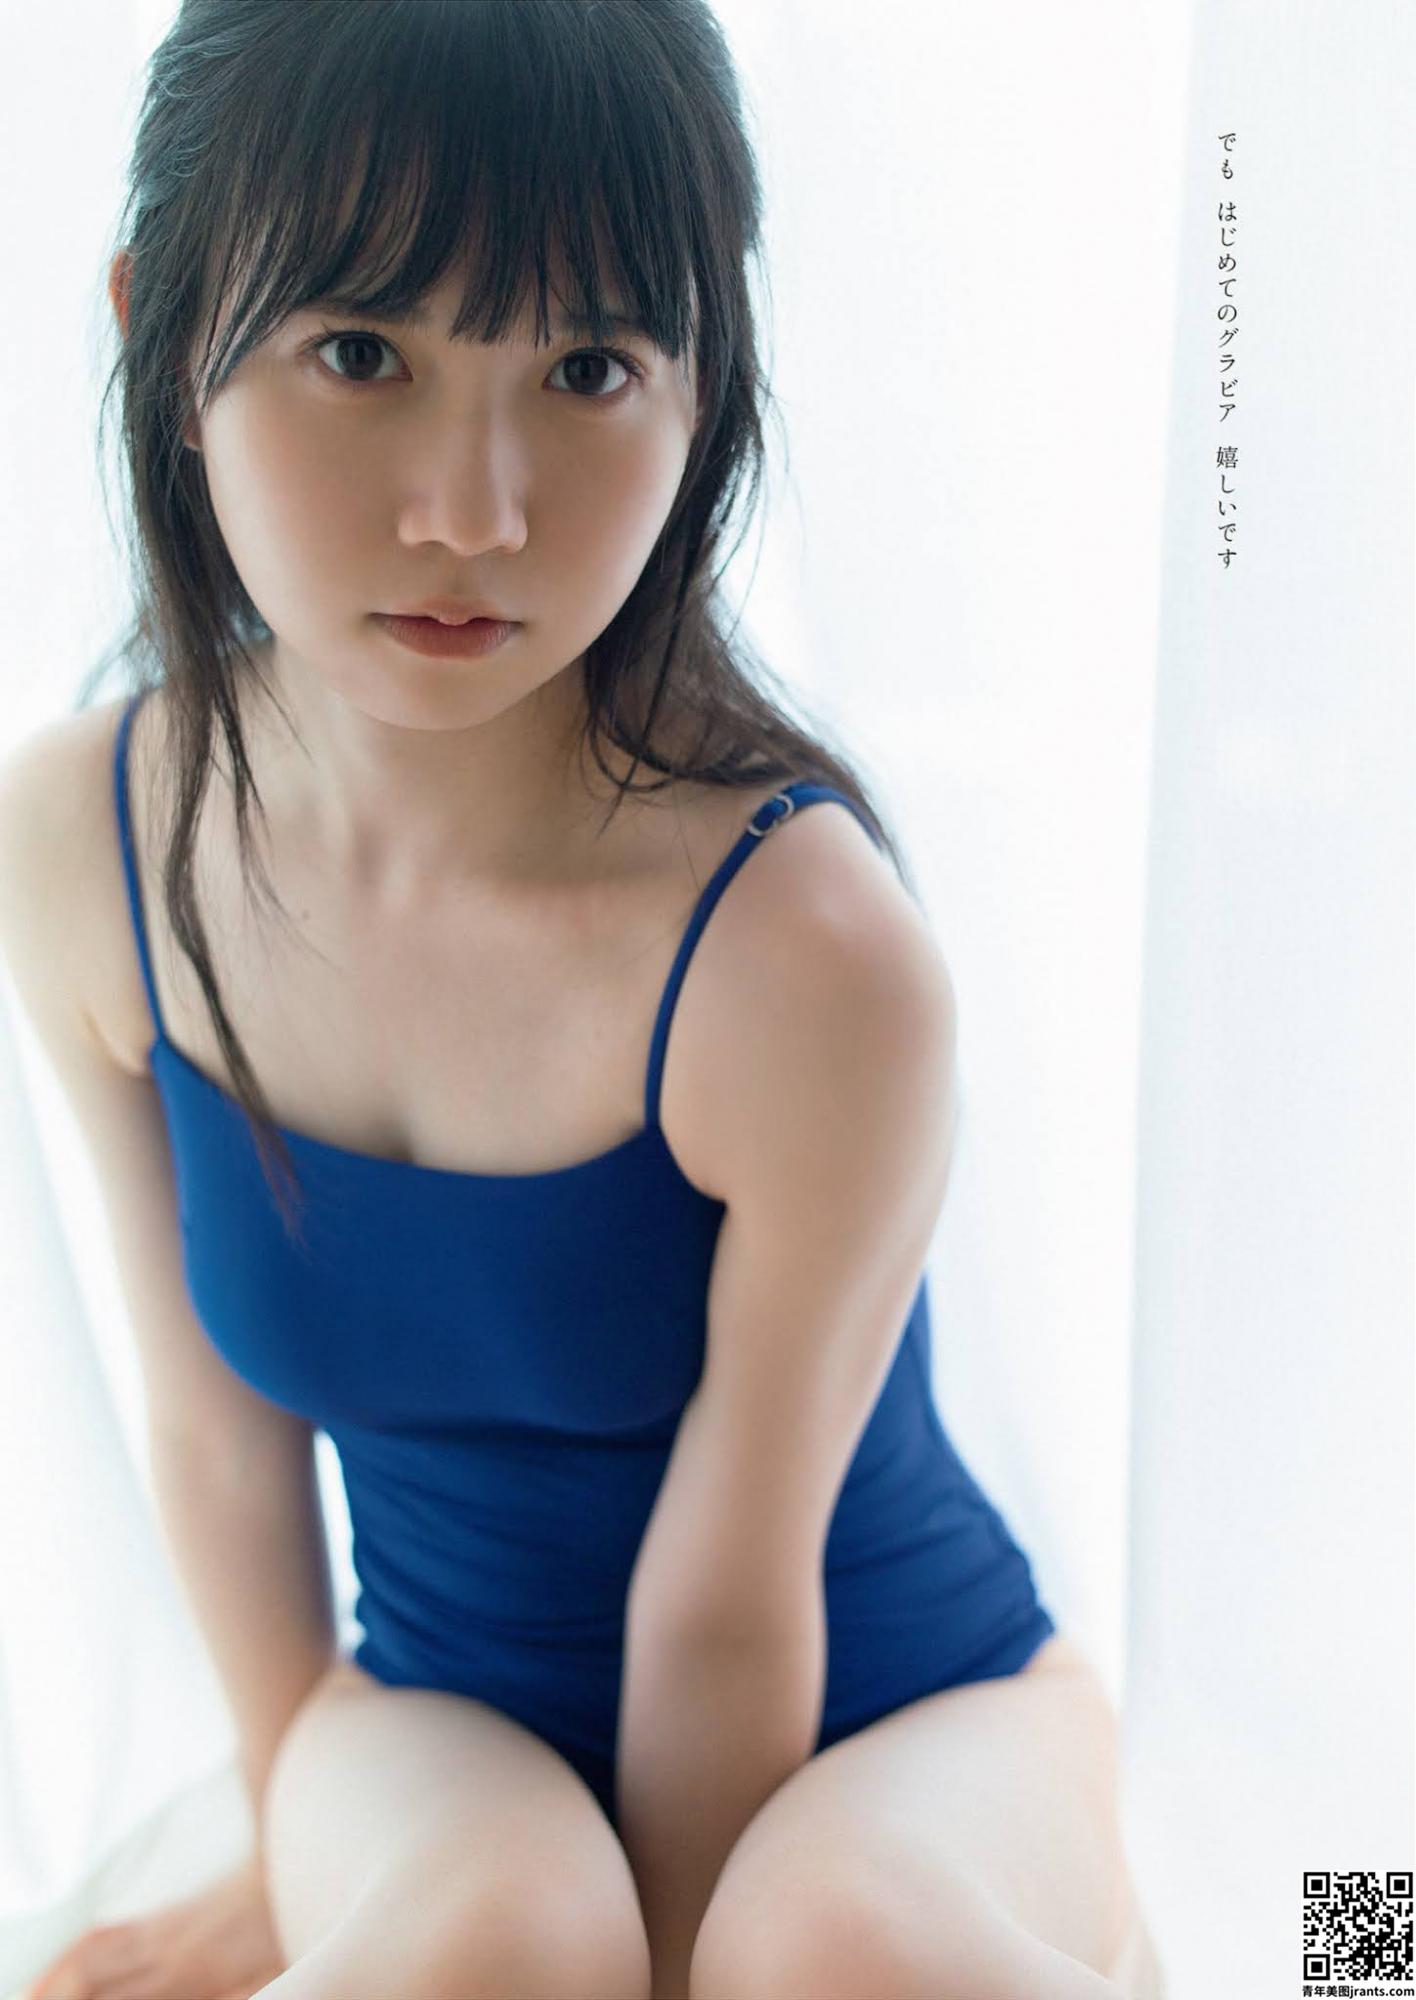 Ayumi Nii 新居歩美, Weekly Playboy 2021 No.45